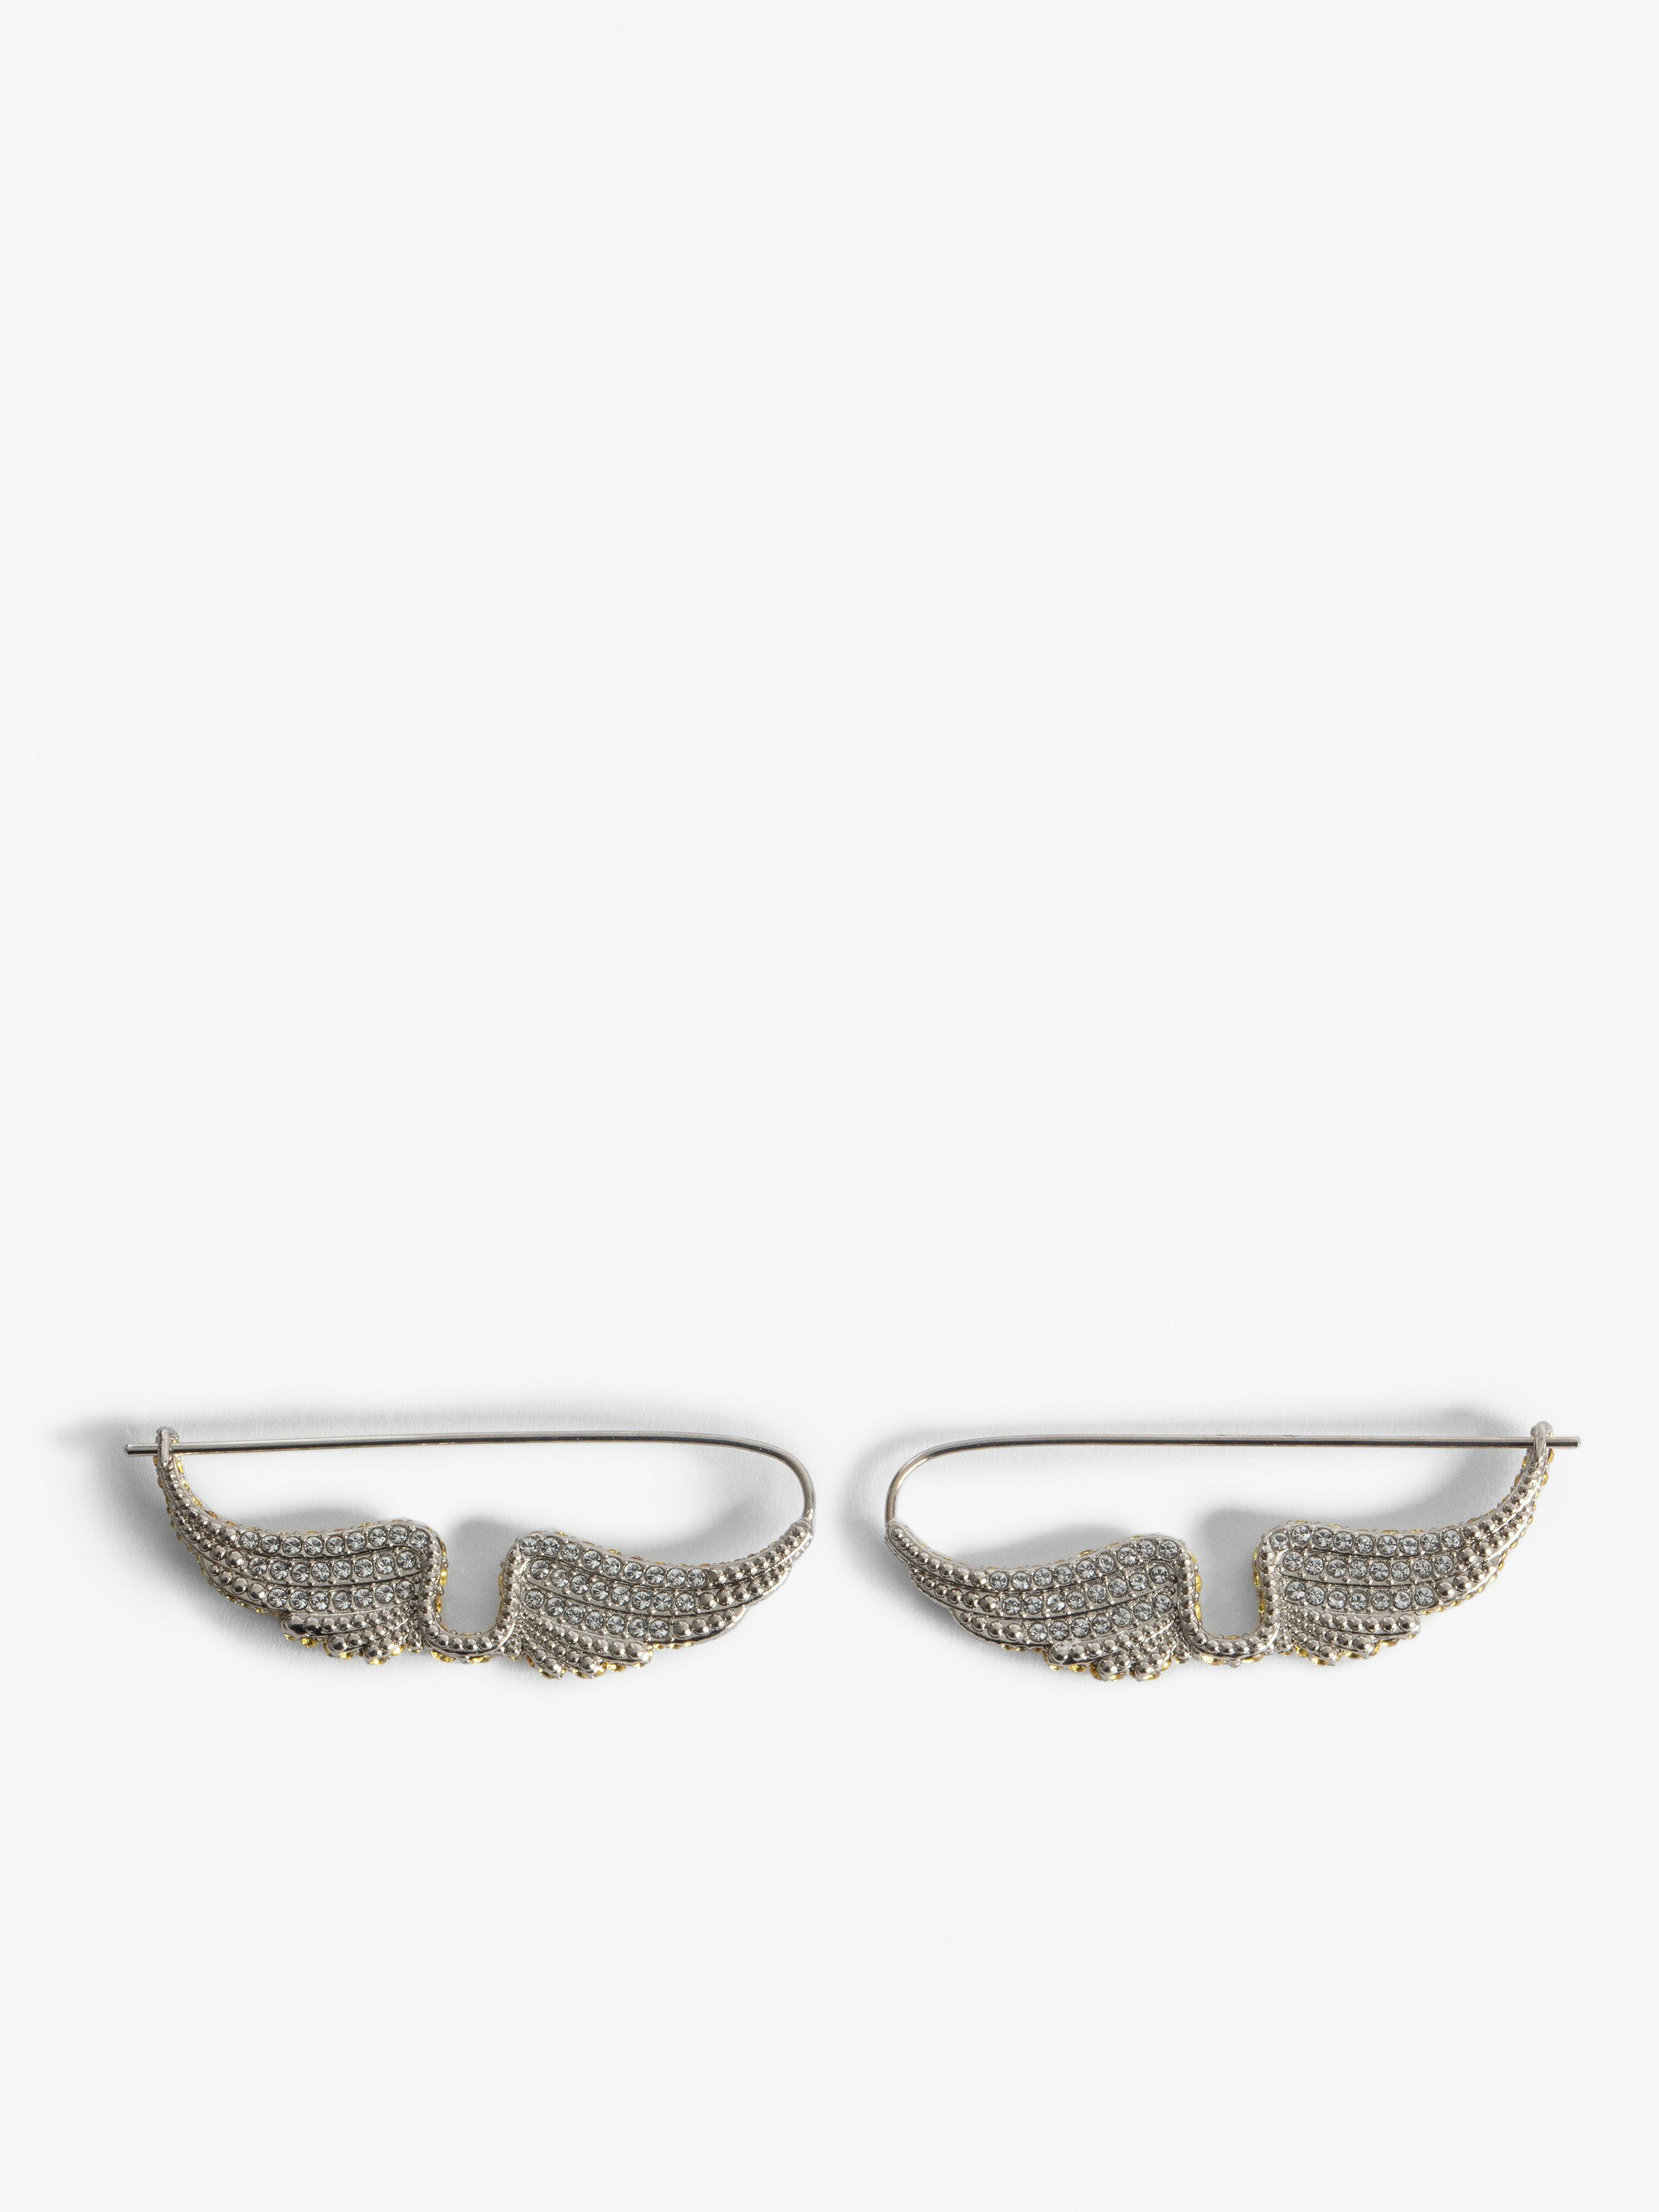 Rock Piercing Earrings - Women’s silver-tone brass earrings with diamanté wings.